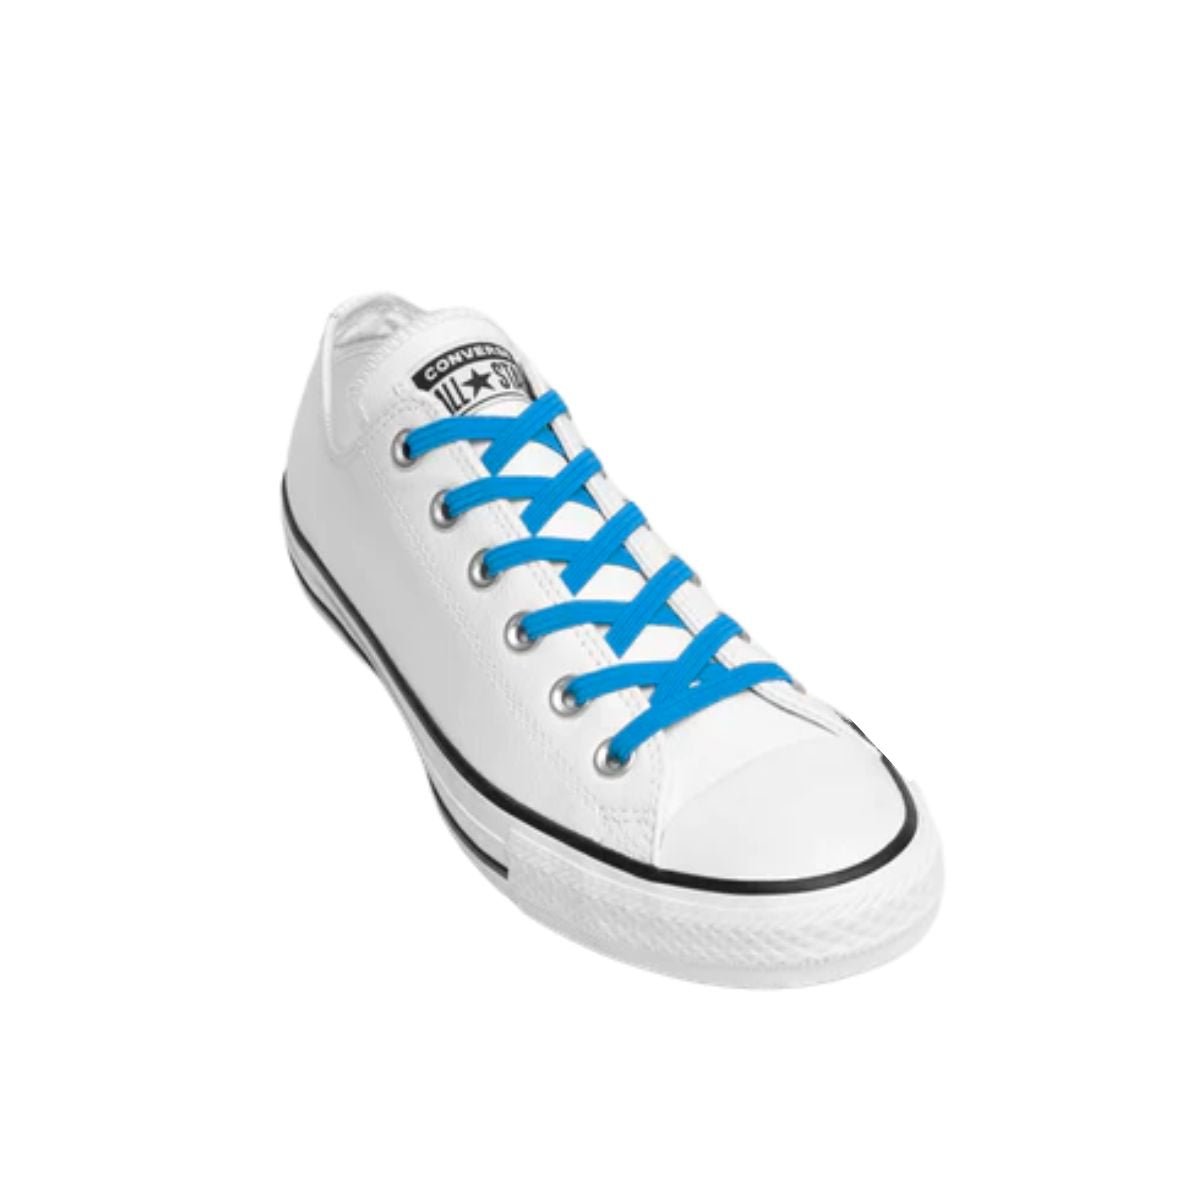 Replacement for Shoe Laces Blue No-Tie Shoelaces